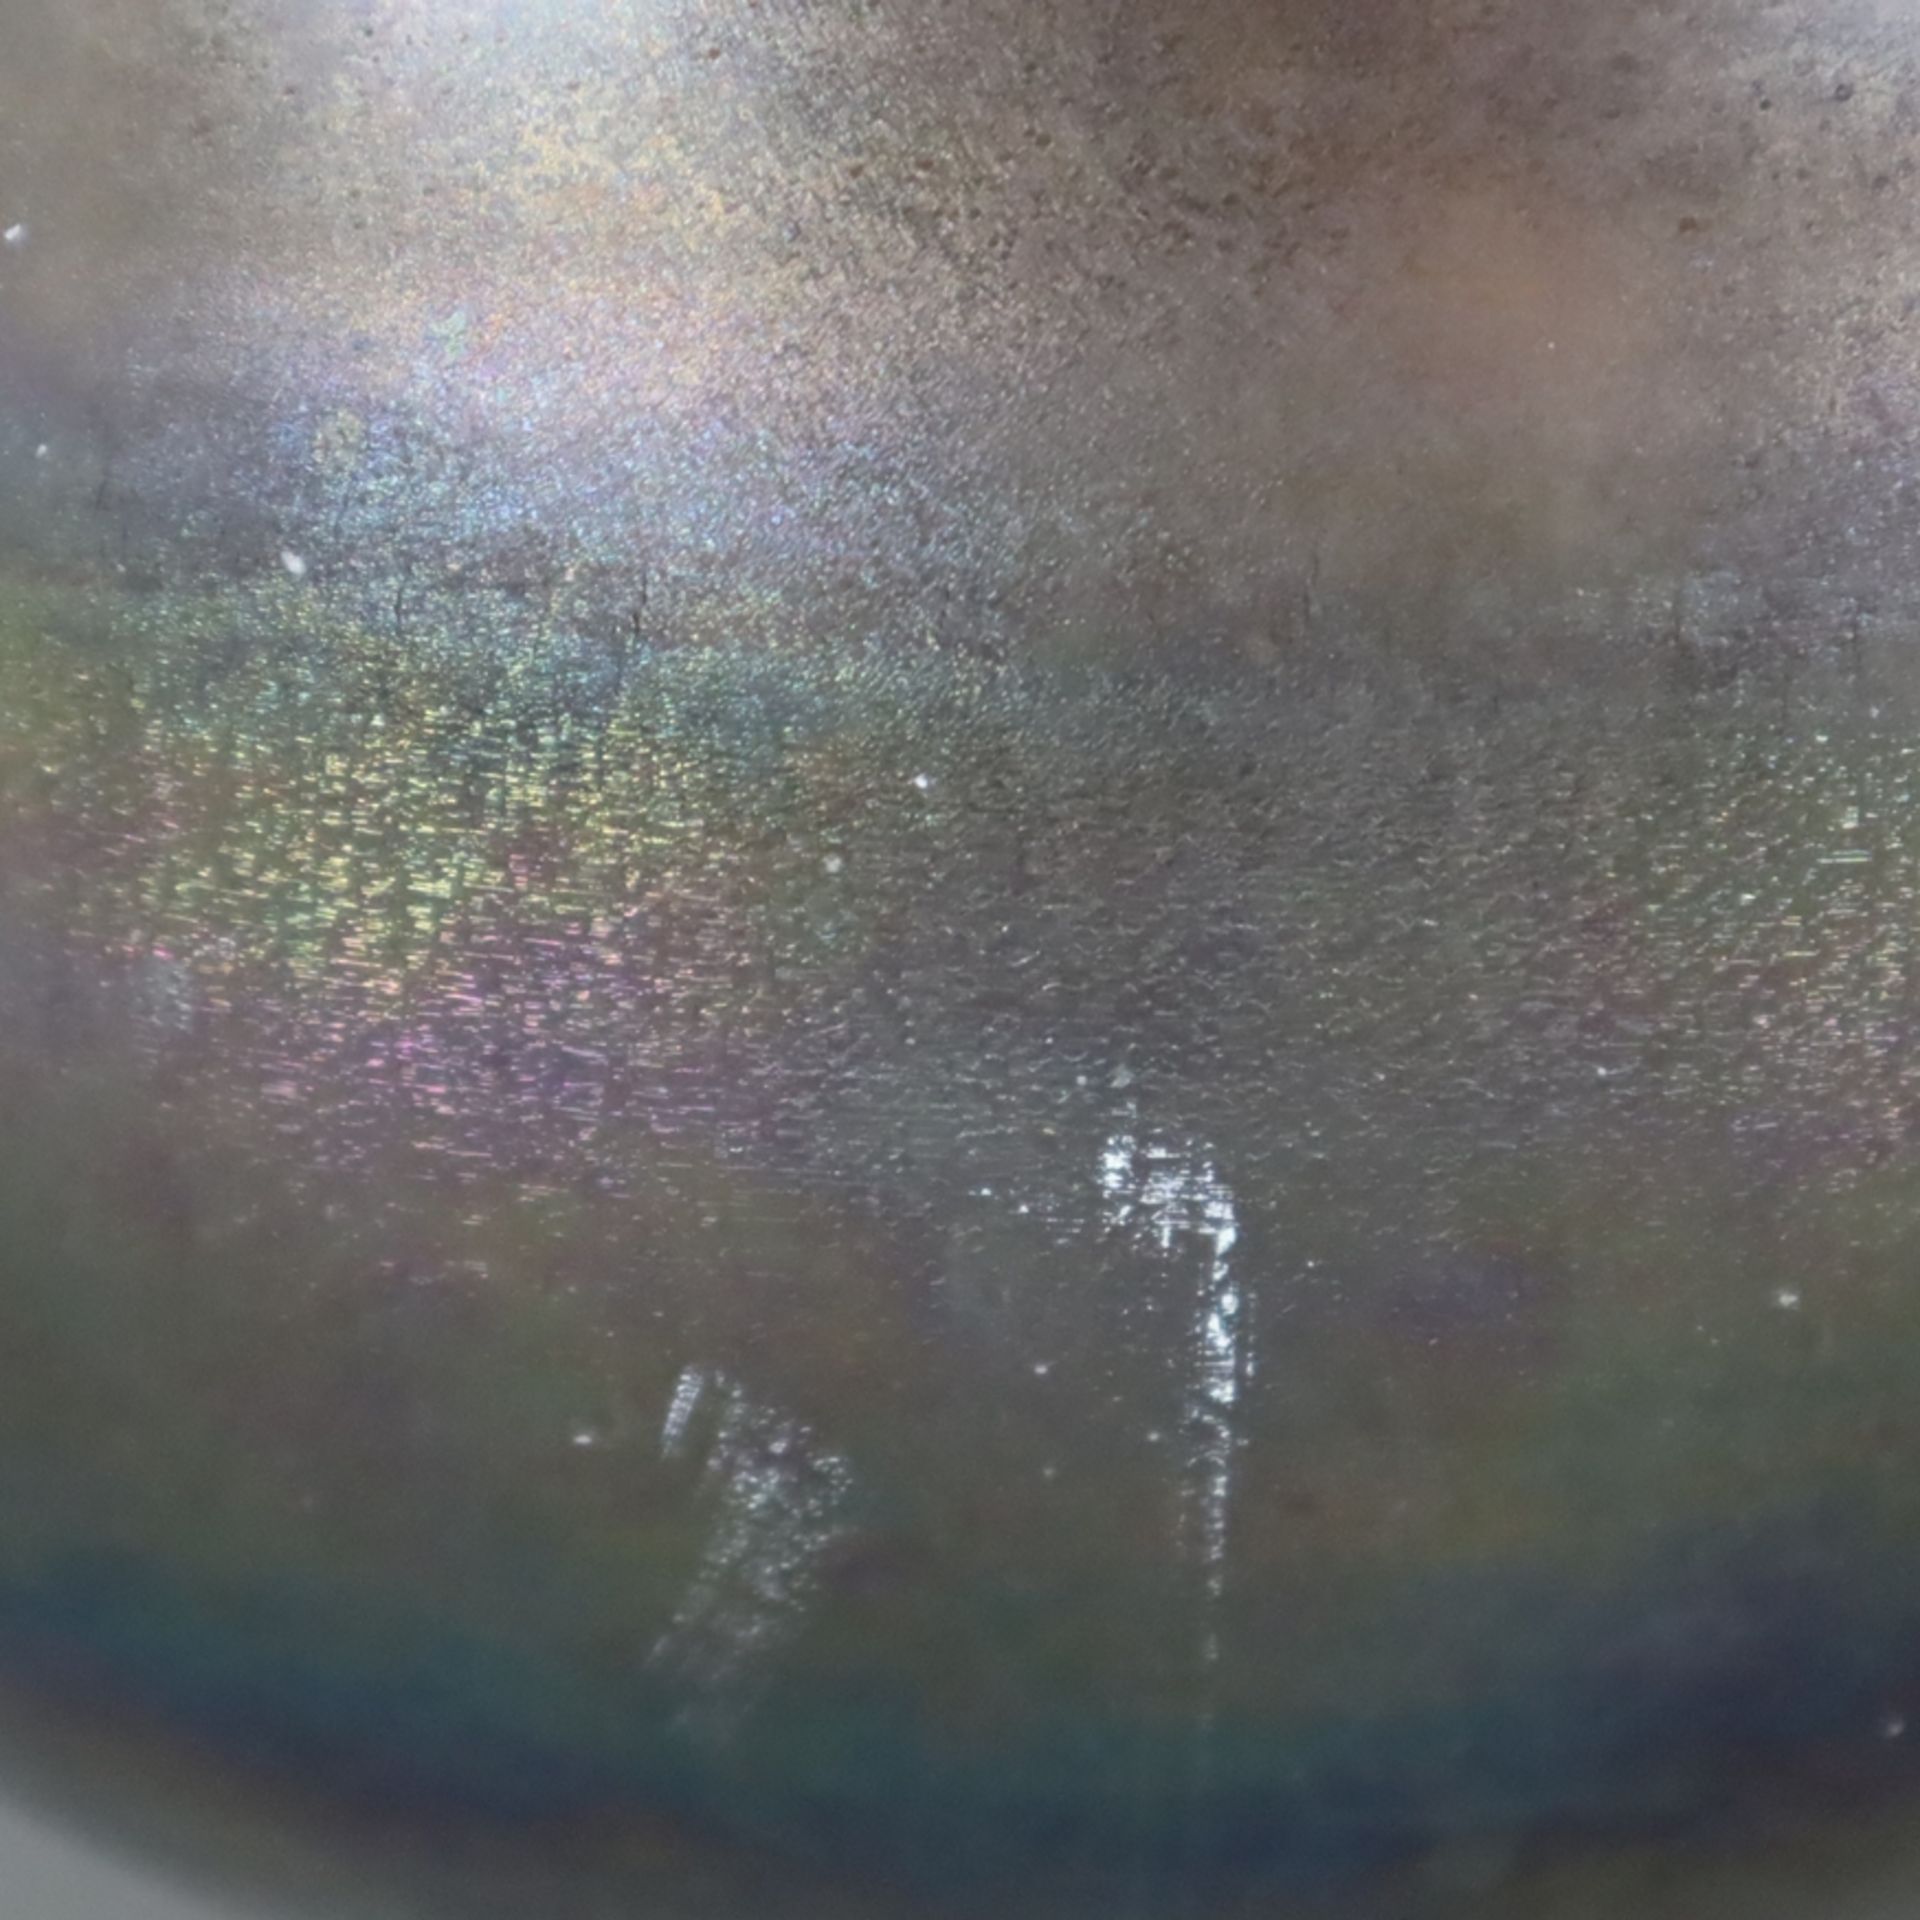 Jugendstil-Blumentopf - irisiertes Glas, bauchige Form, ausgeschliffener Bodenabriss, Gebrauchsspur - Image 4 of 7